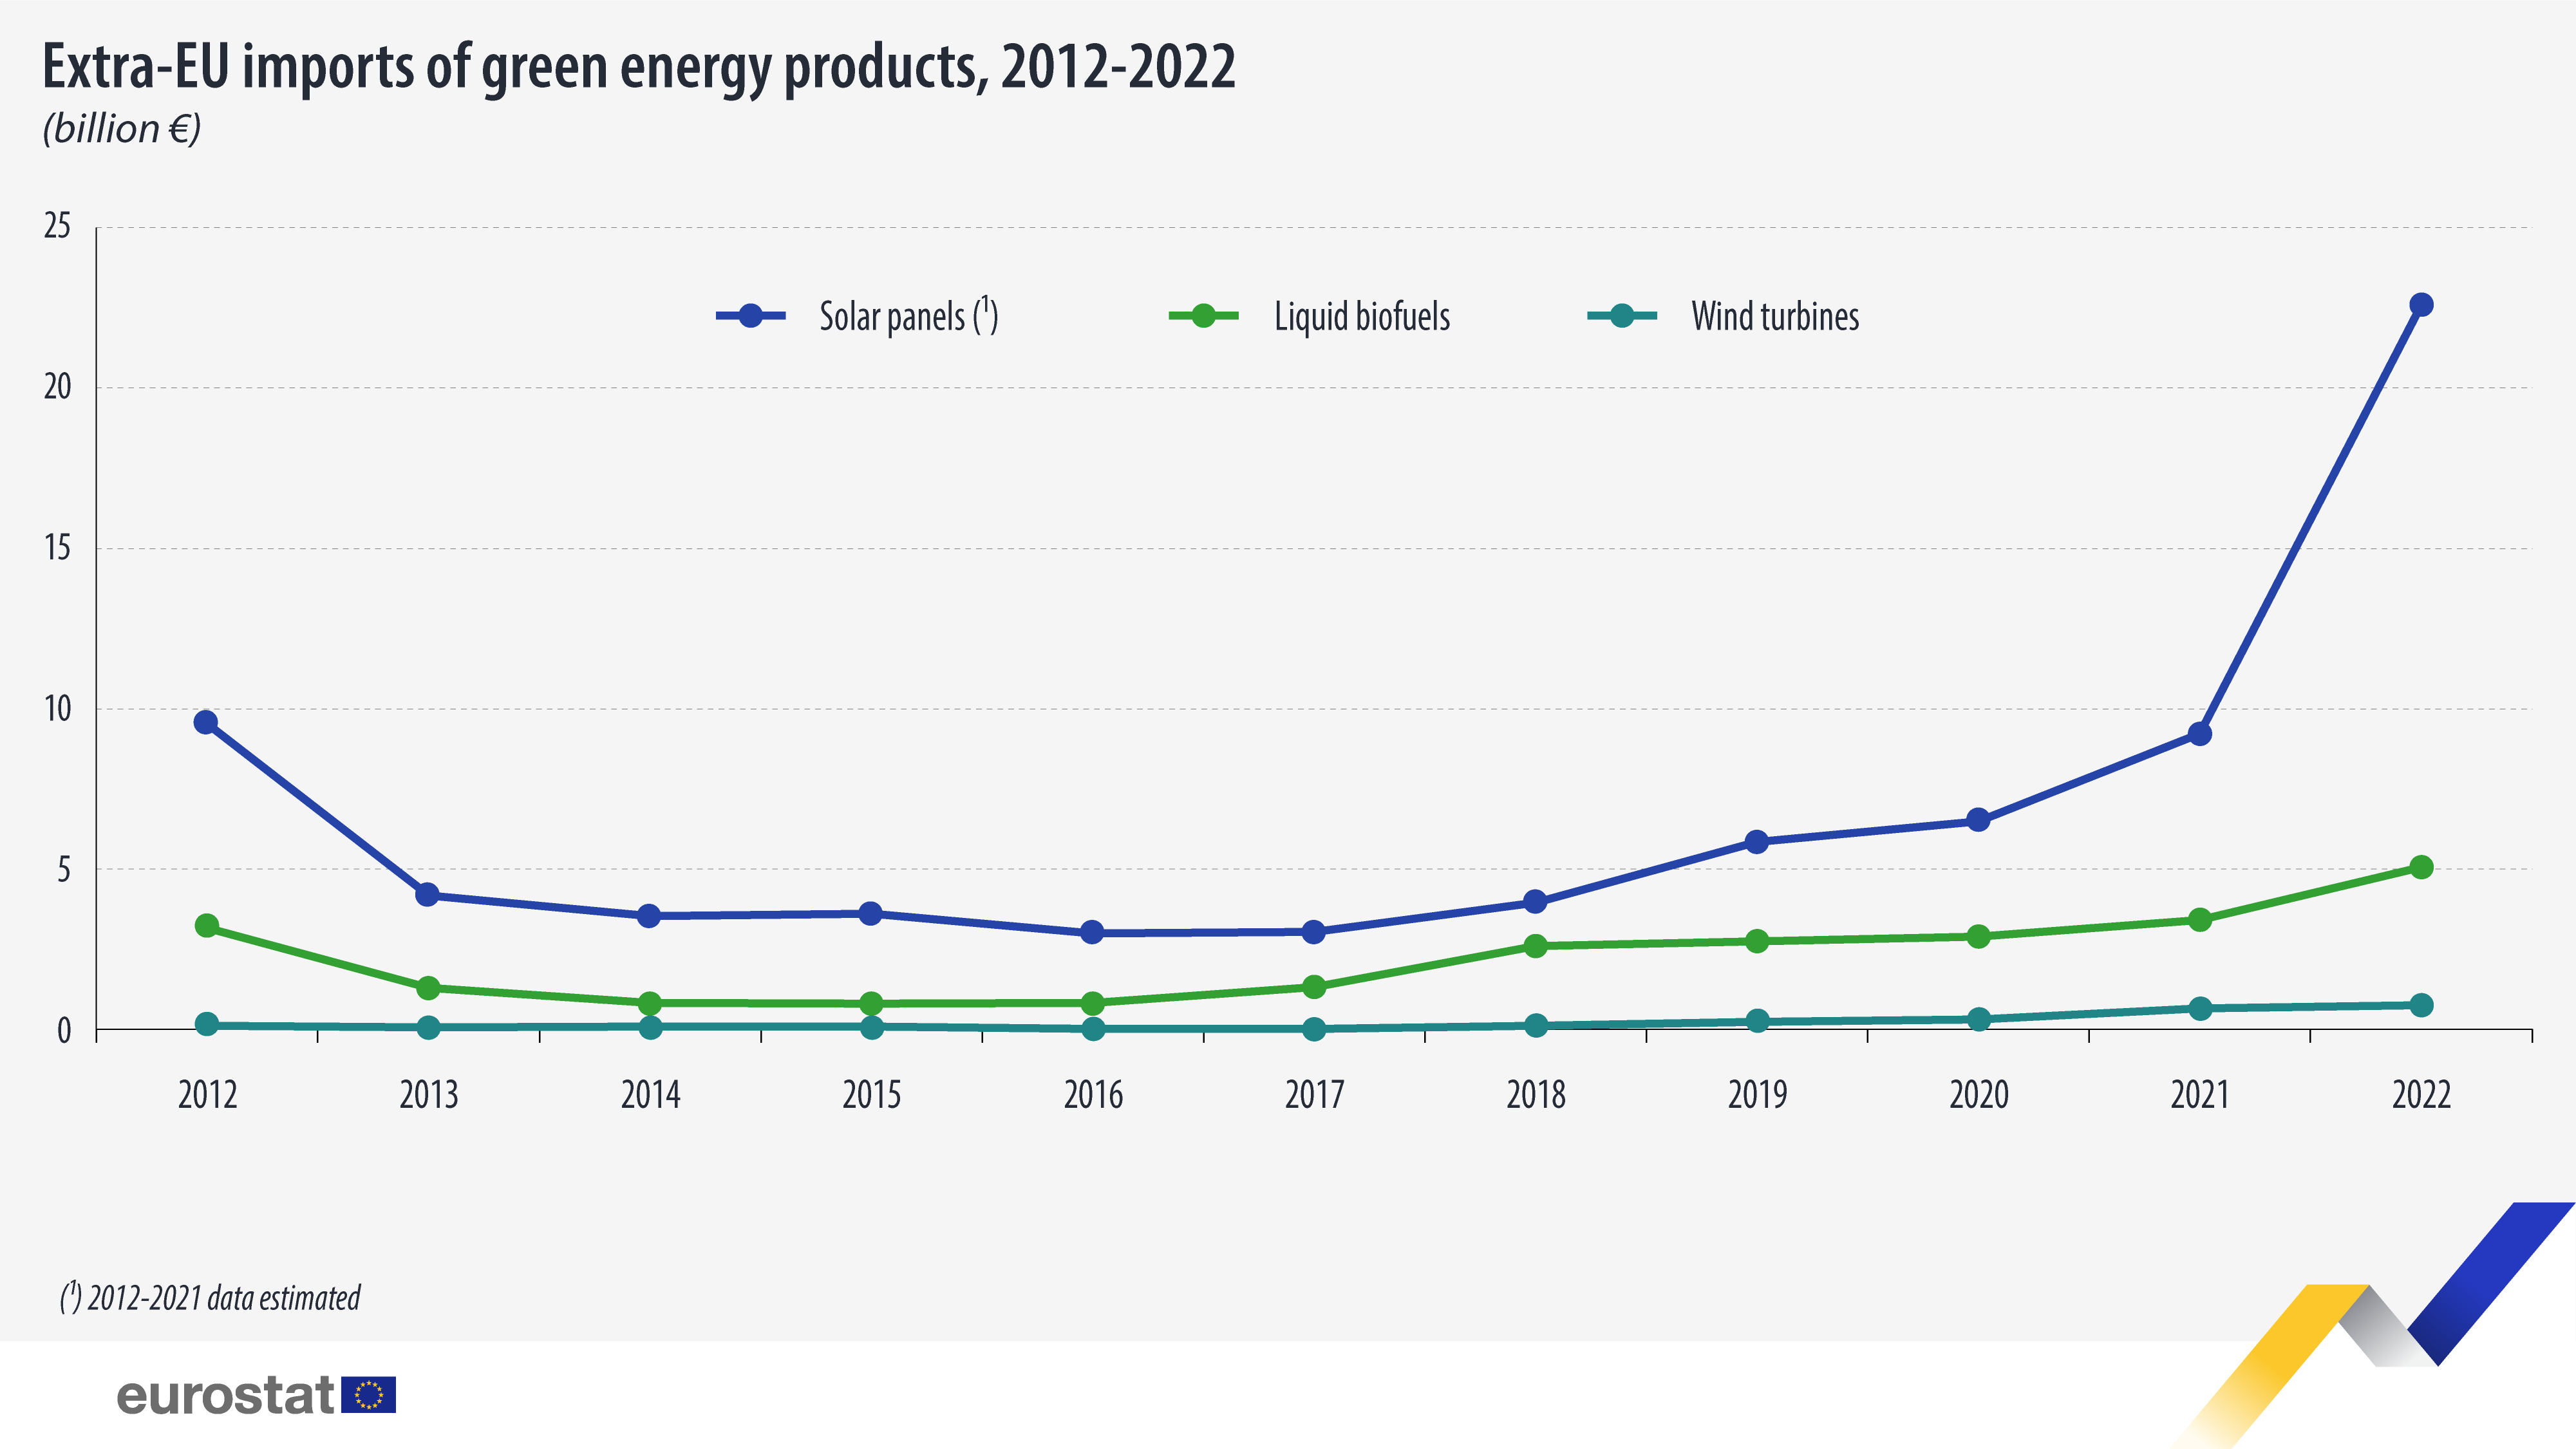 EU više nego udvostručila uvoz proizvoda zelene energije, izvoz smanjila za 27 odsto 2